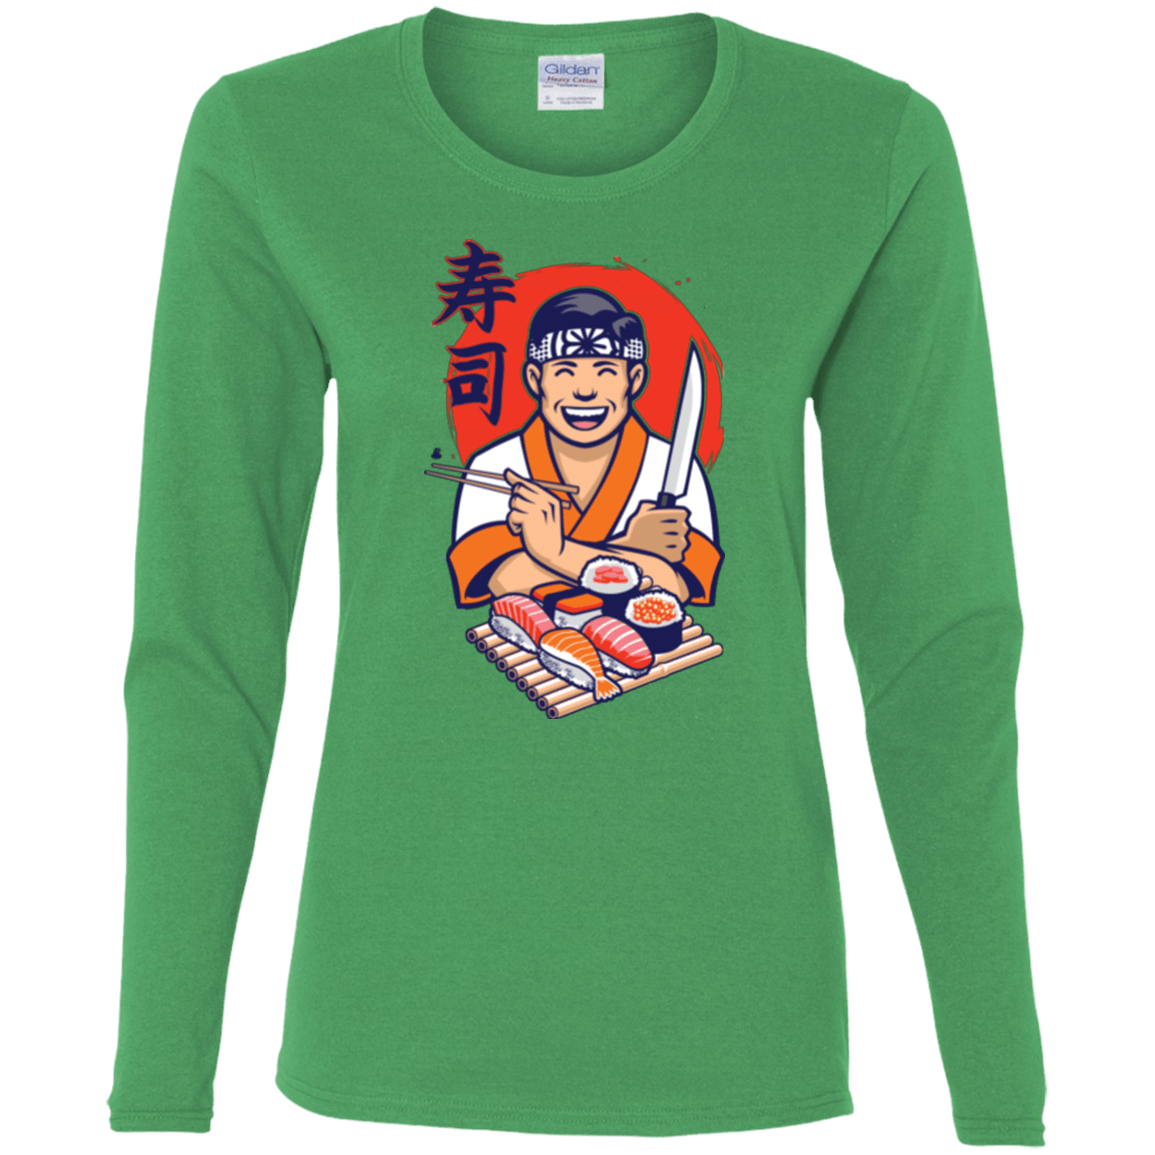 T-Shirts Irish Green / S DANIEL SAN SUSHI Women's Long Sleeve T-Shirt